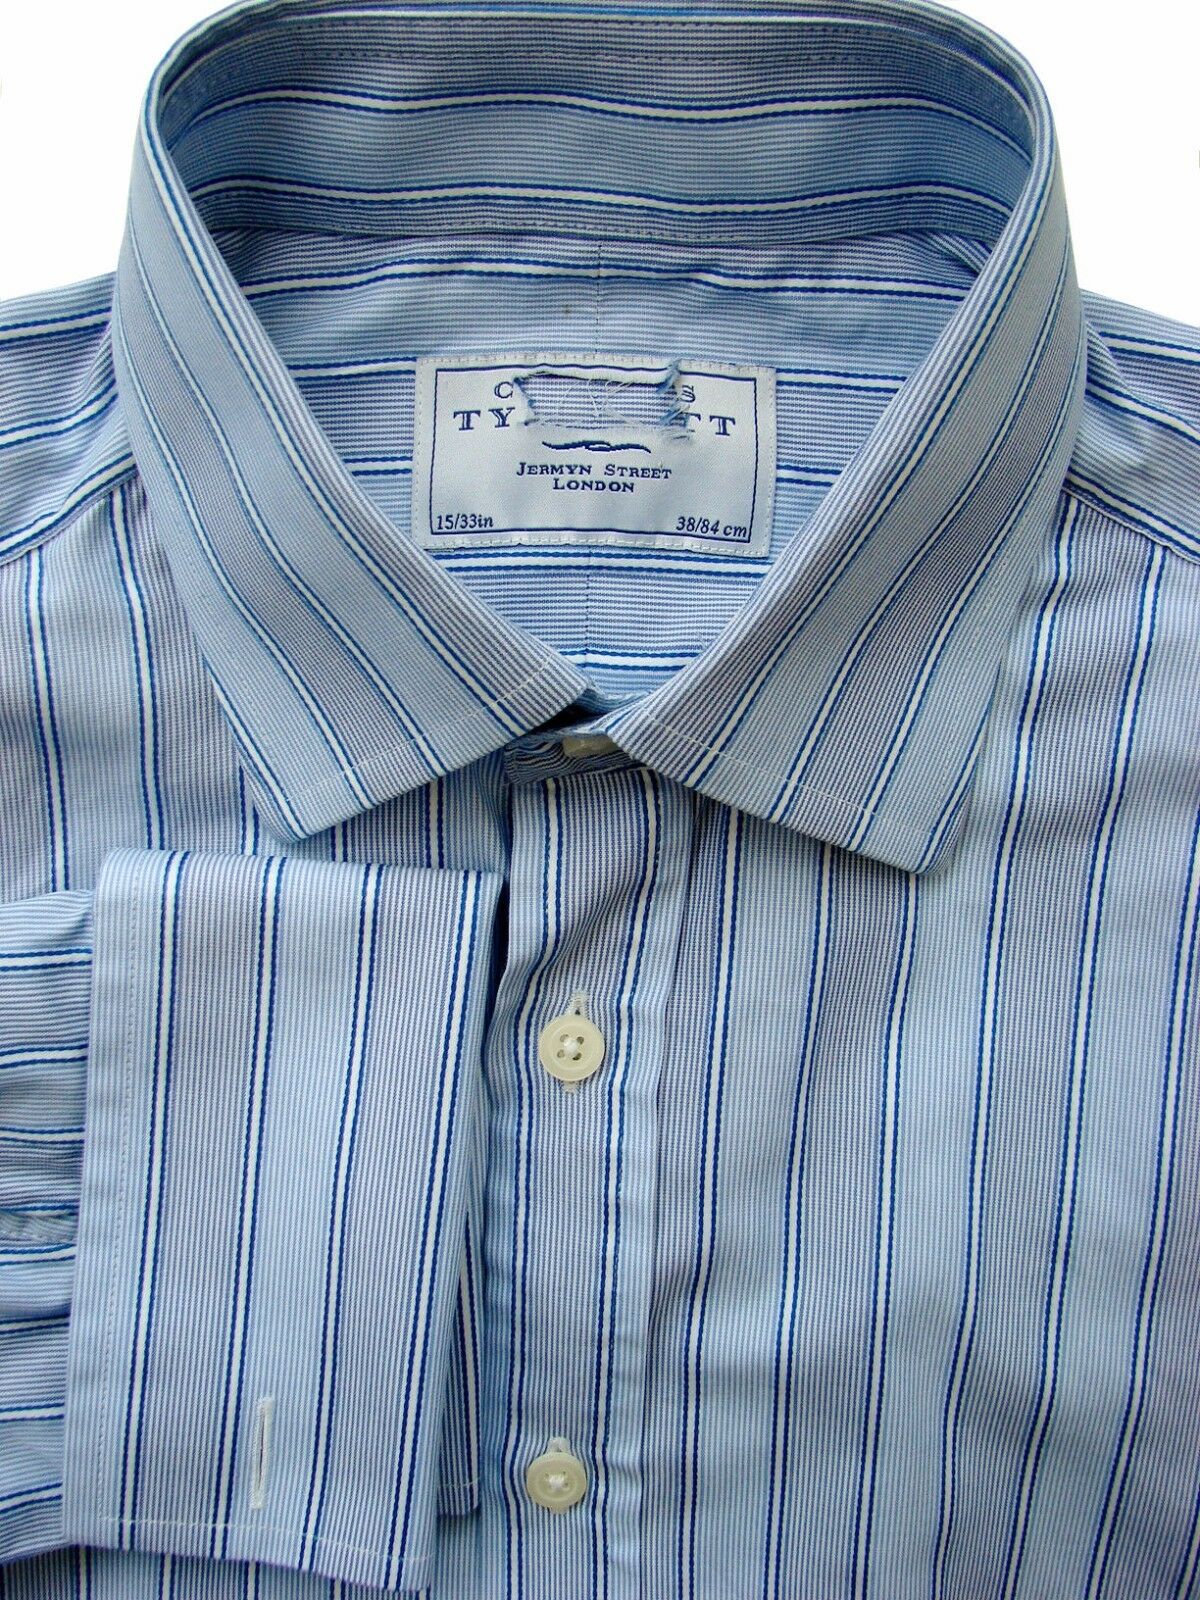 CHARLES TYRWHITT Shirt Mens 15 S Blue – Blue & White Stripes - Brandinity